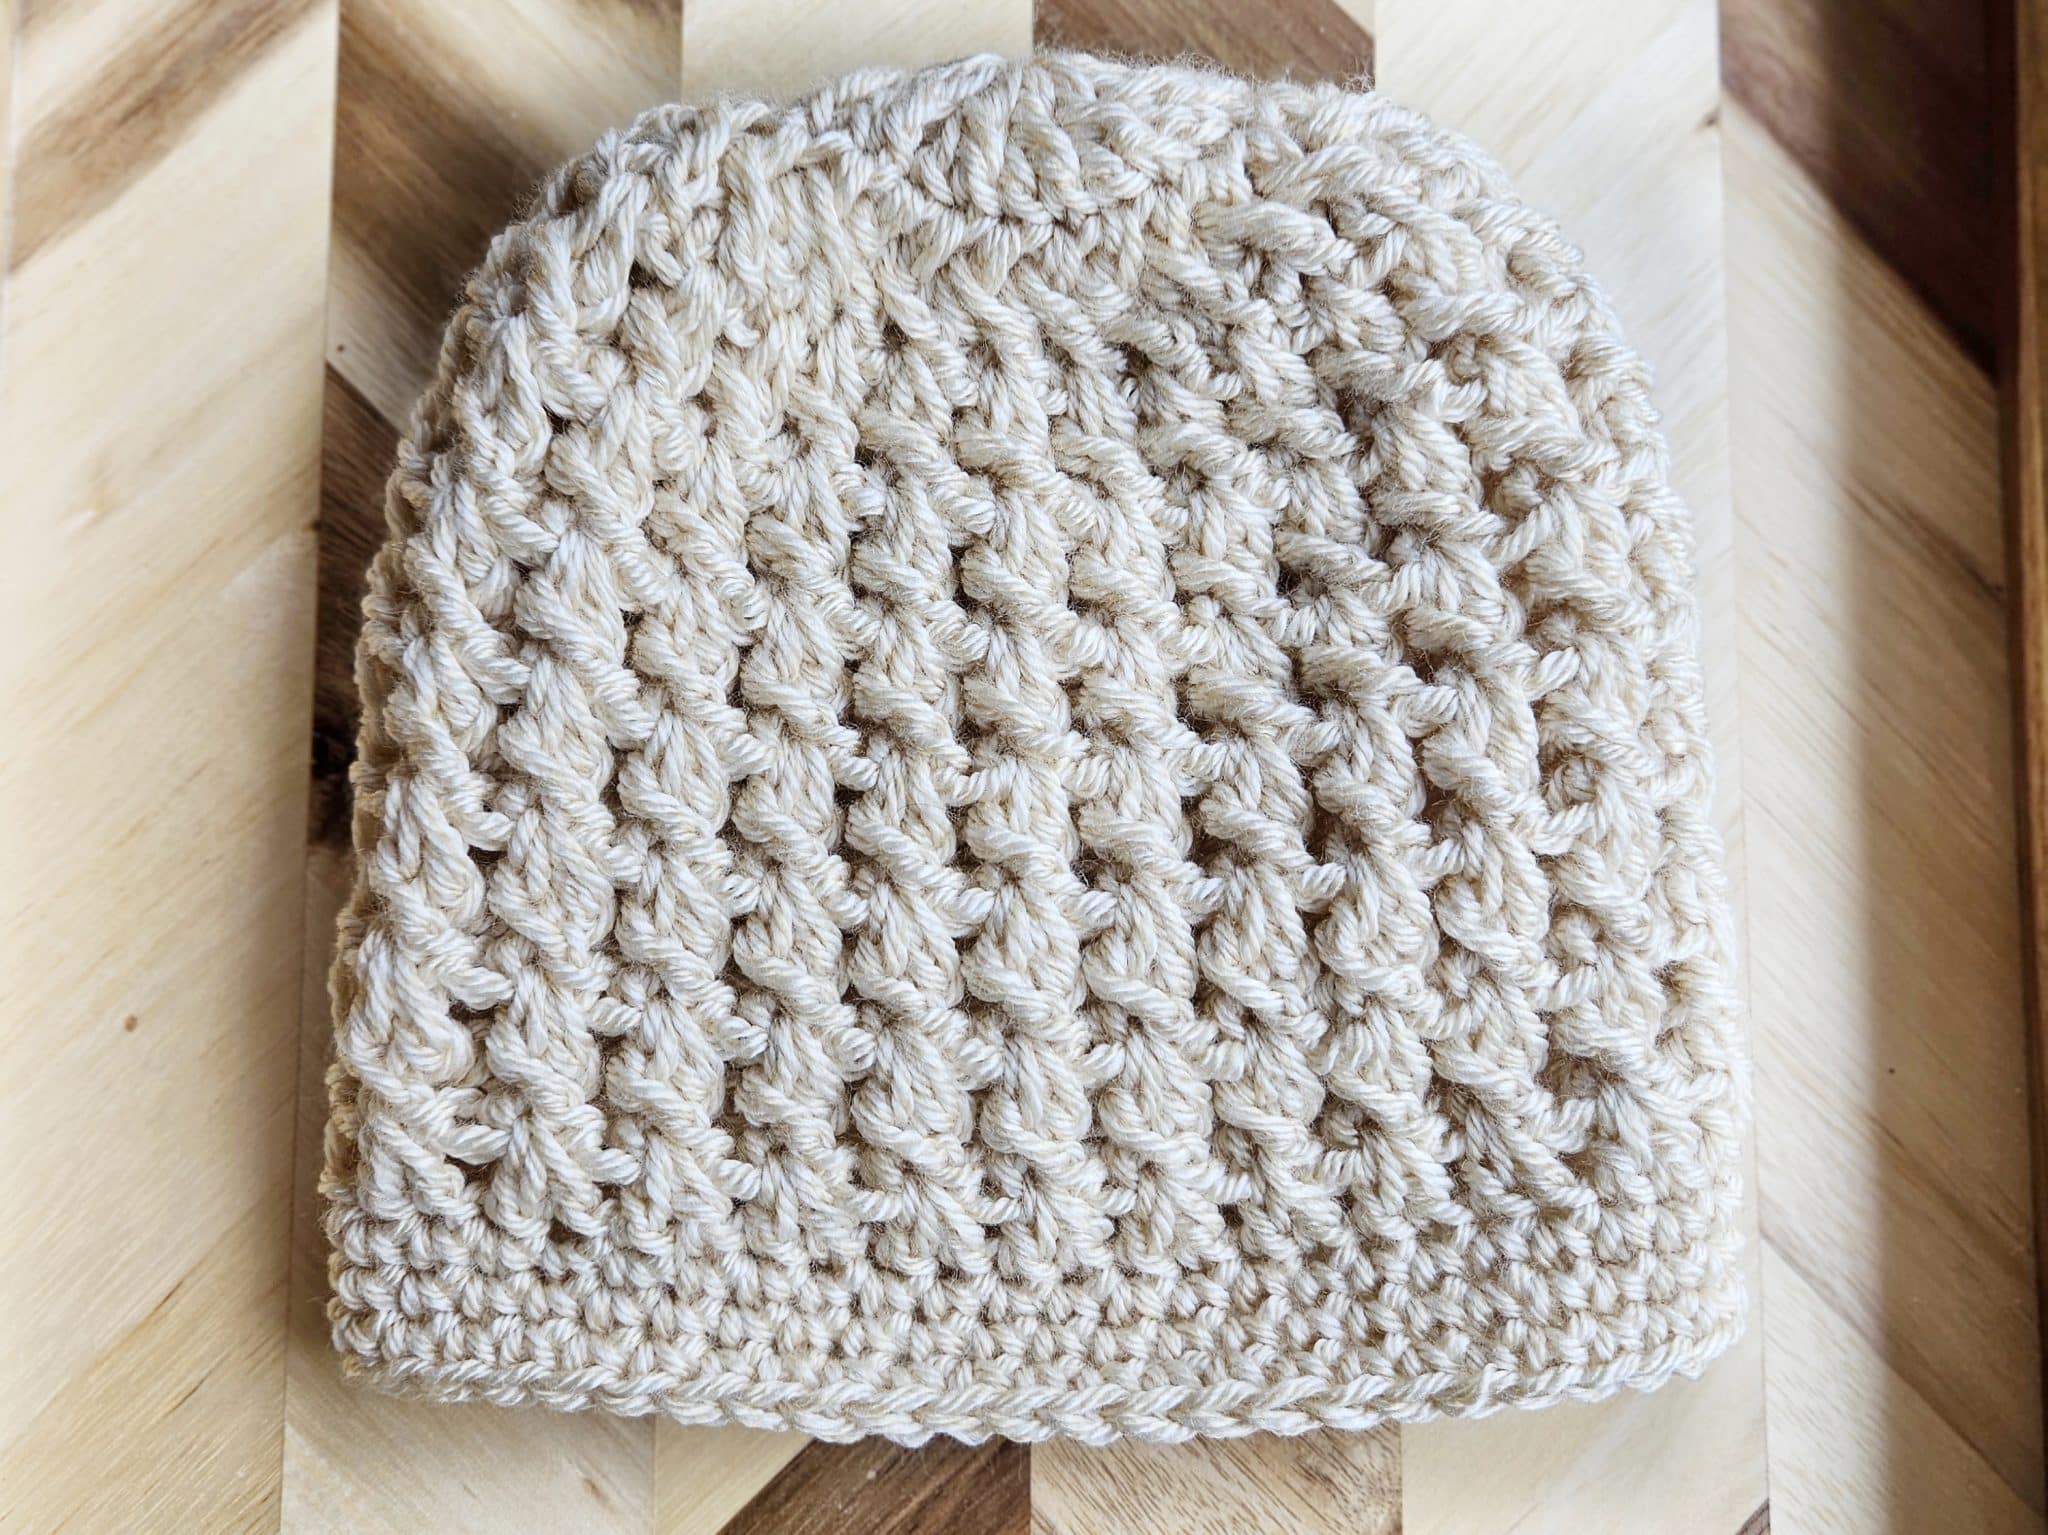 crochet winter hat pattern